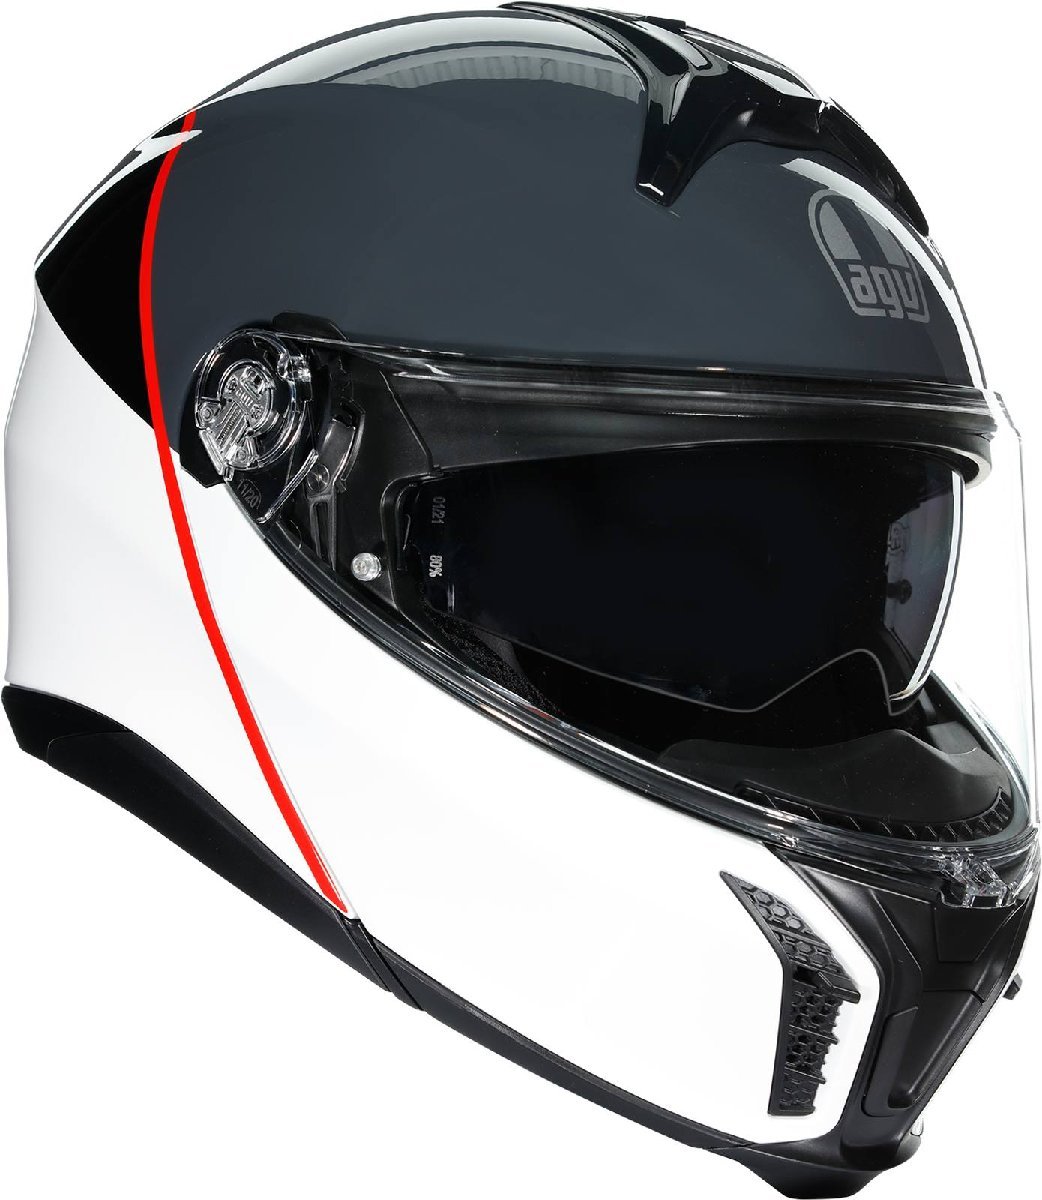 2XLサイズ - ホワイト/グレー/レッド AGV Tourmodular ツアーモジュラー バランス ヘルメット